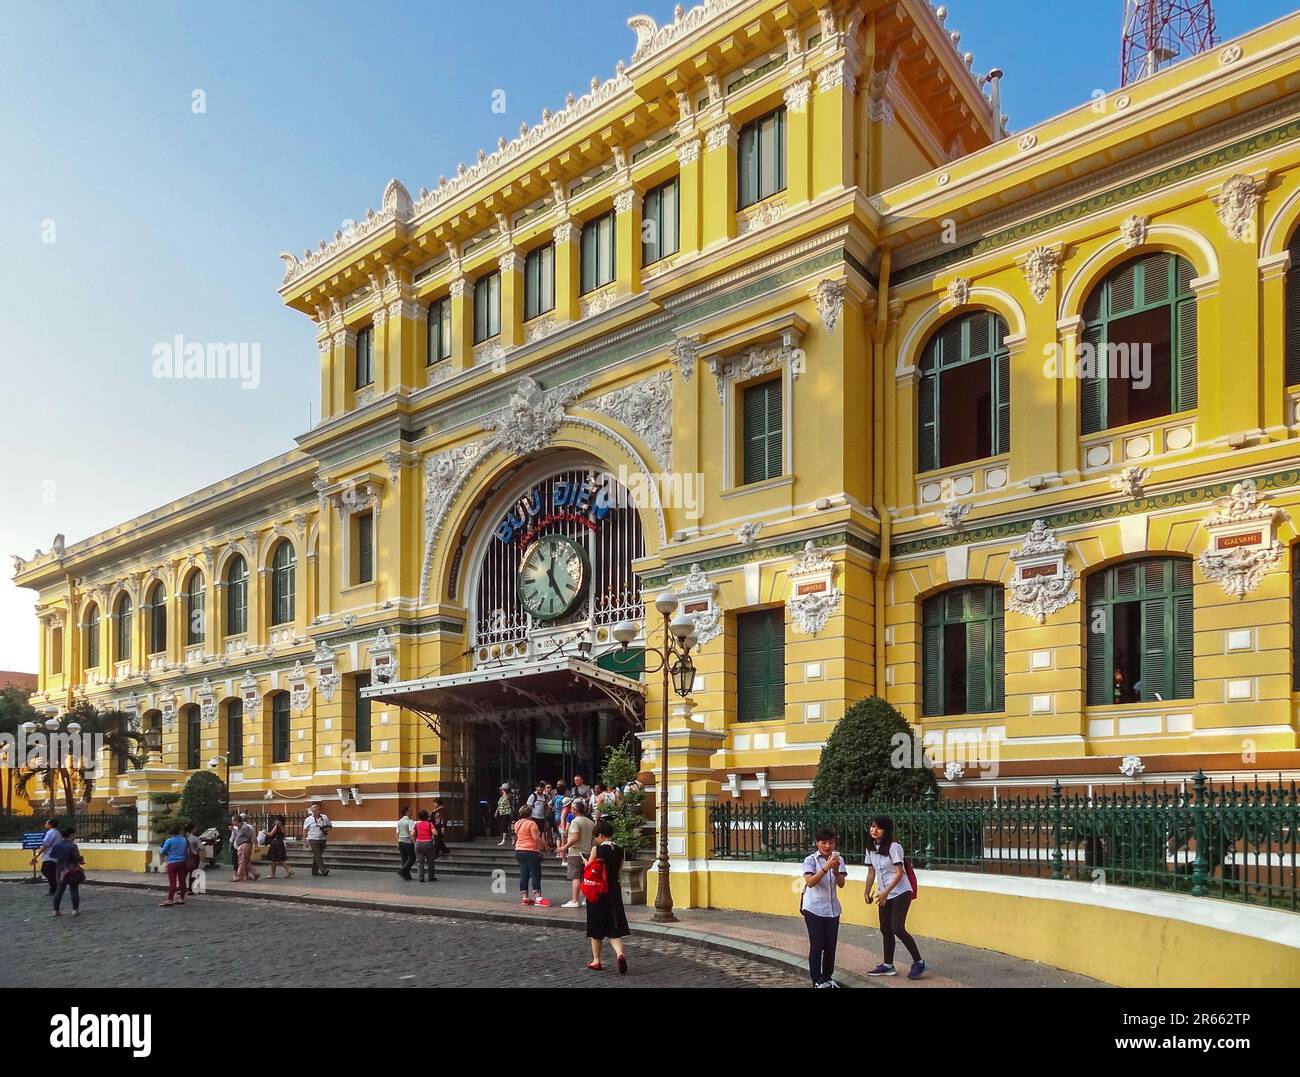 Bureau de poste central de Saigon - Bureau de poste de Ho Chi Minh ville Banque D'Images